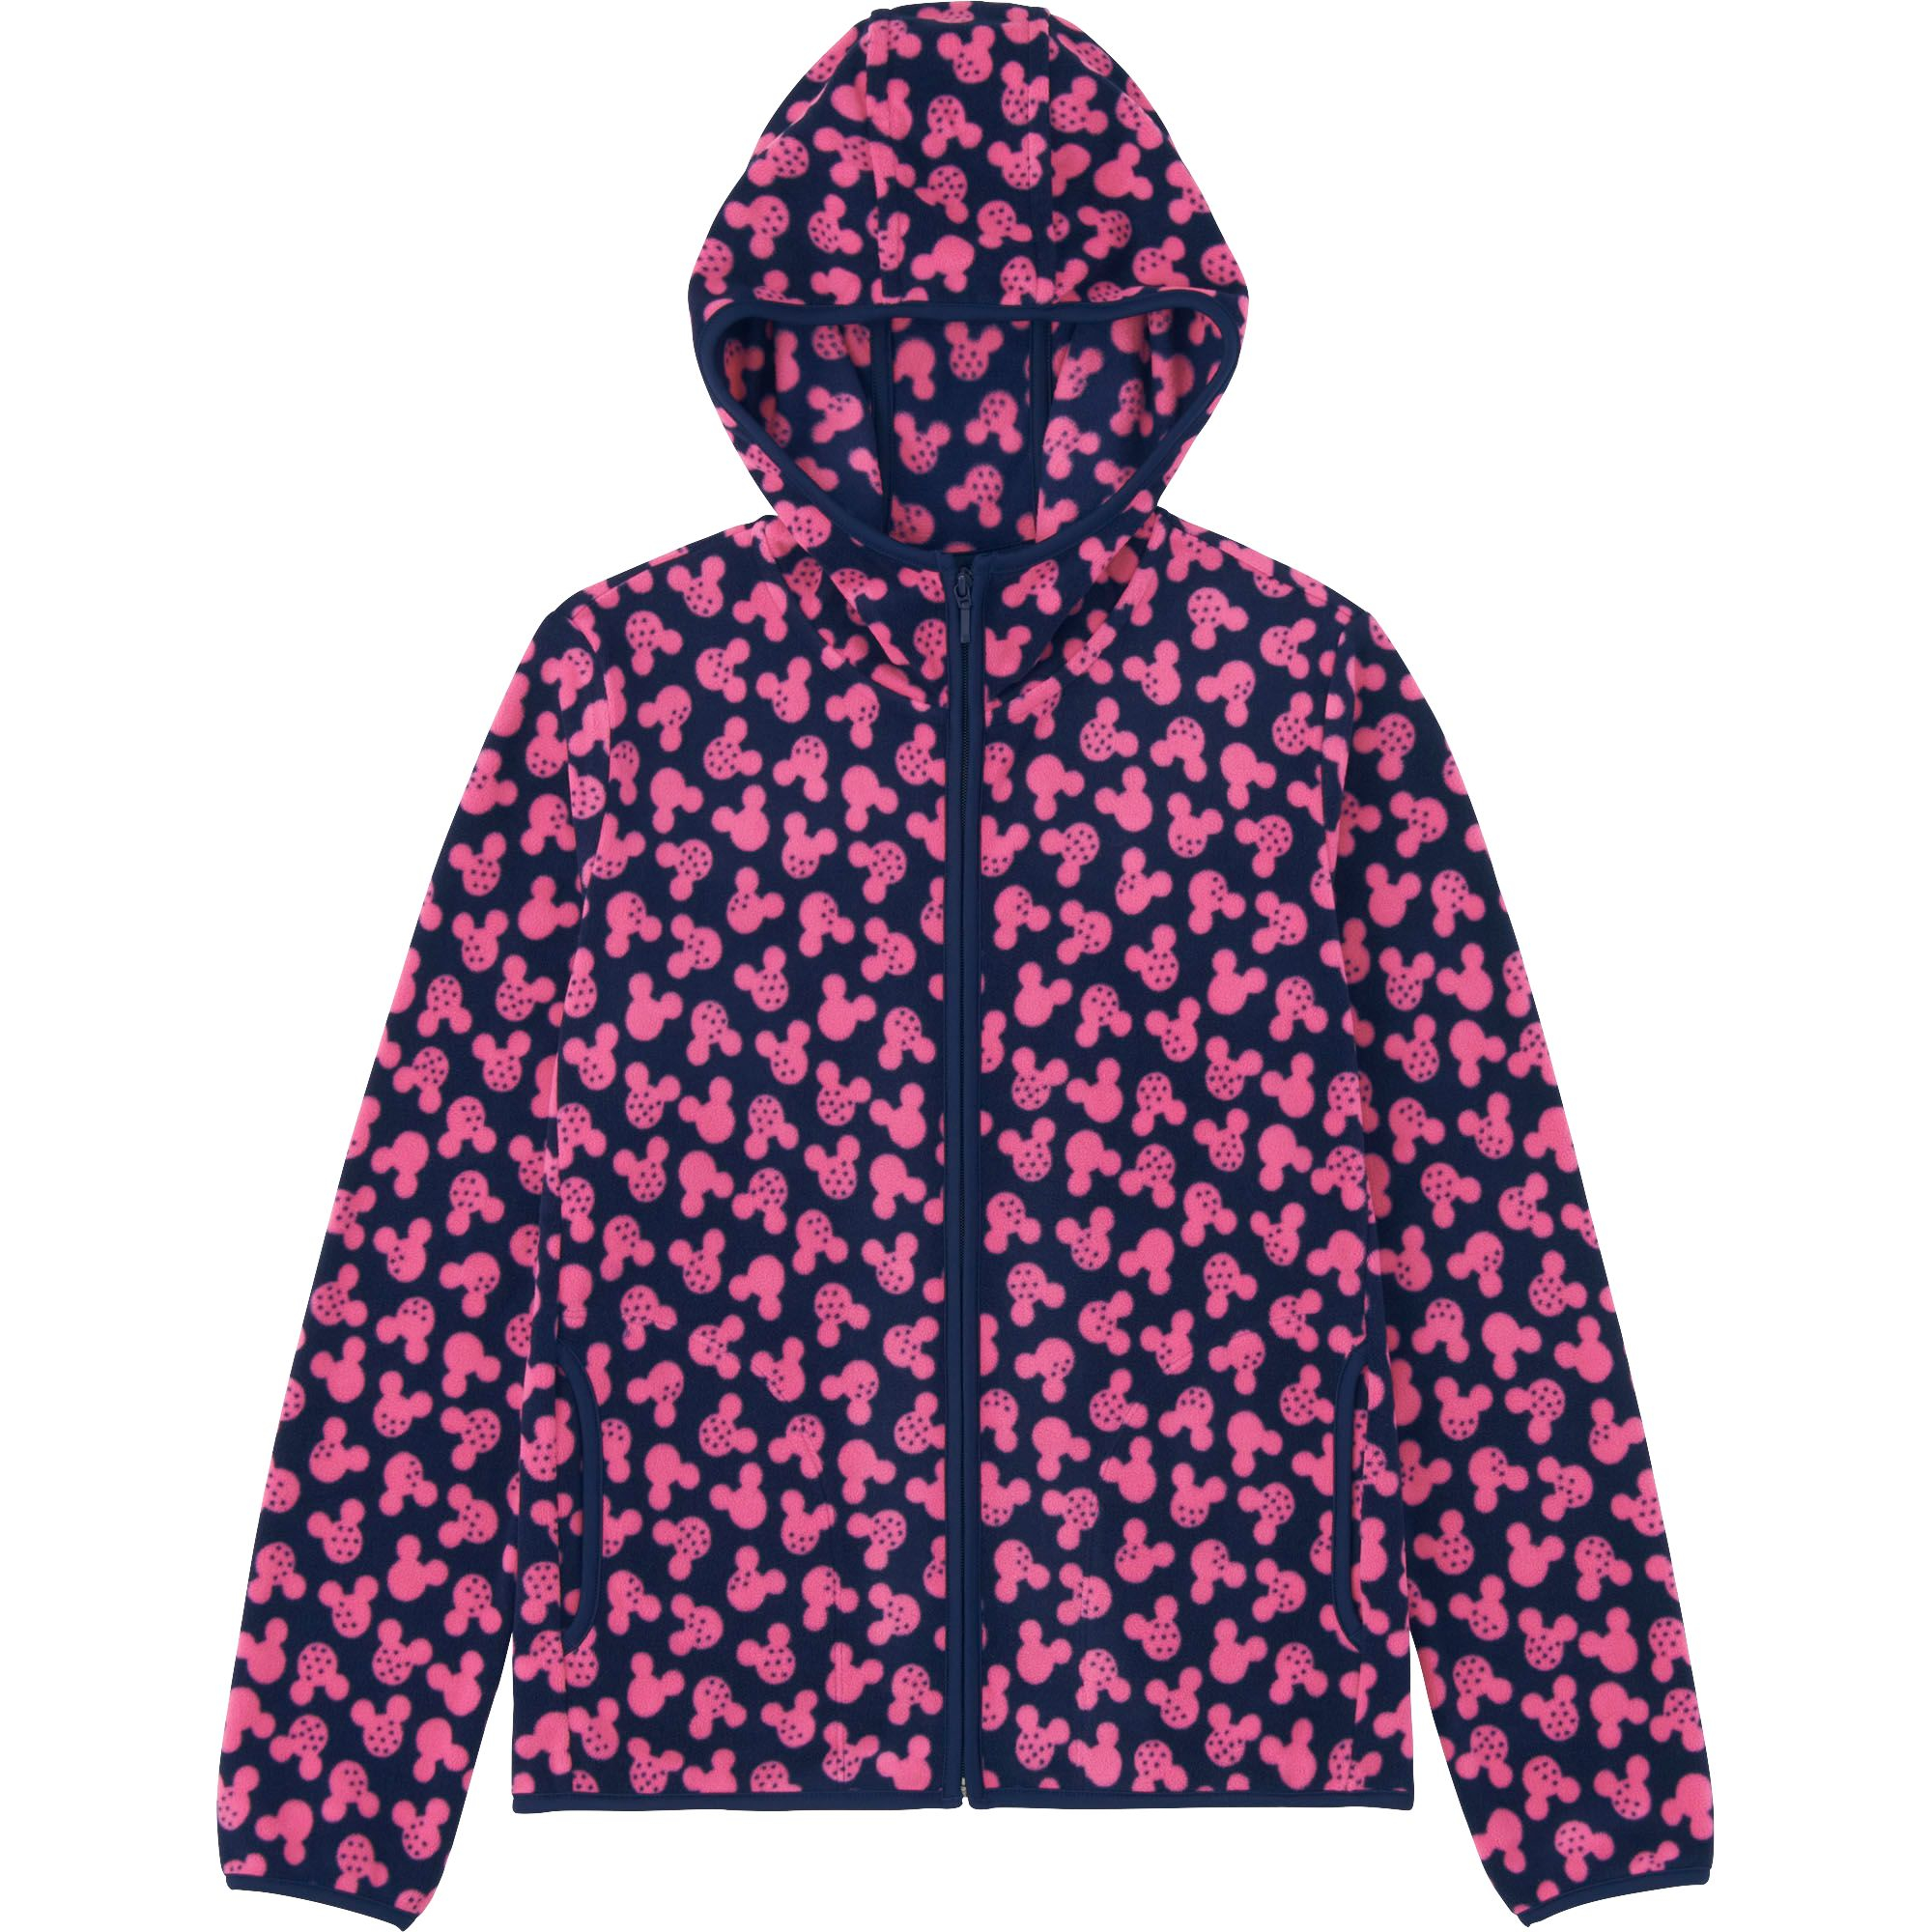 Uniqlo Women Disney Project Fleece Fullzip Hooded Jacket